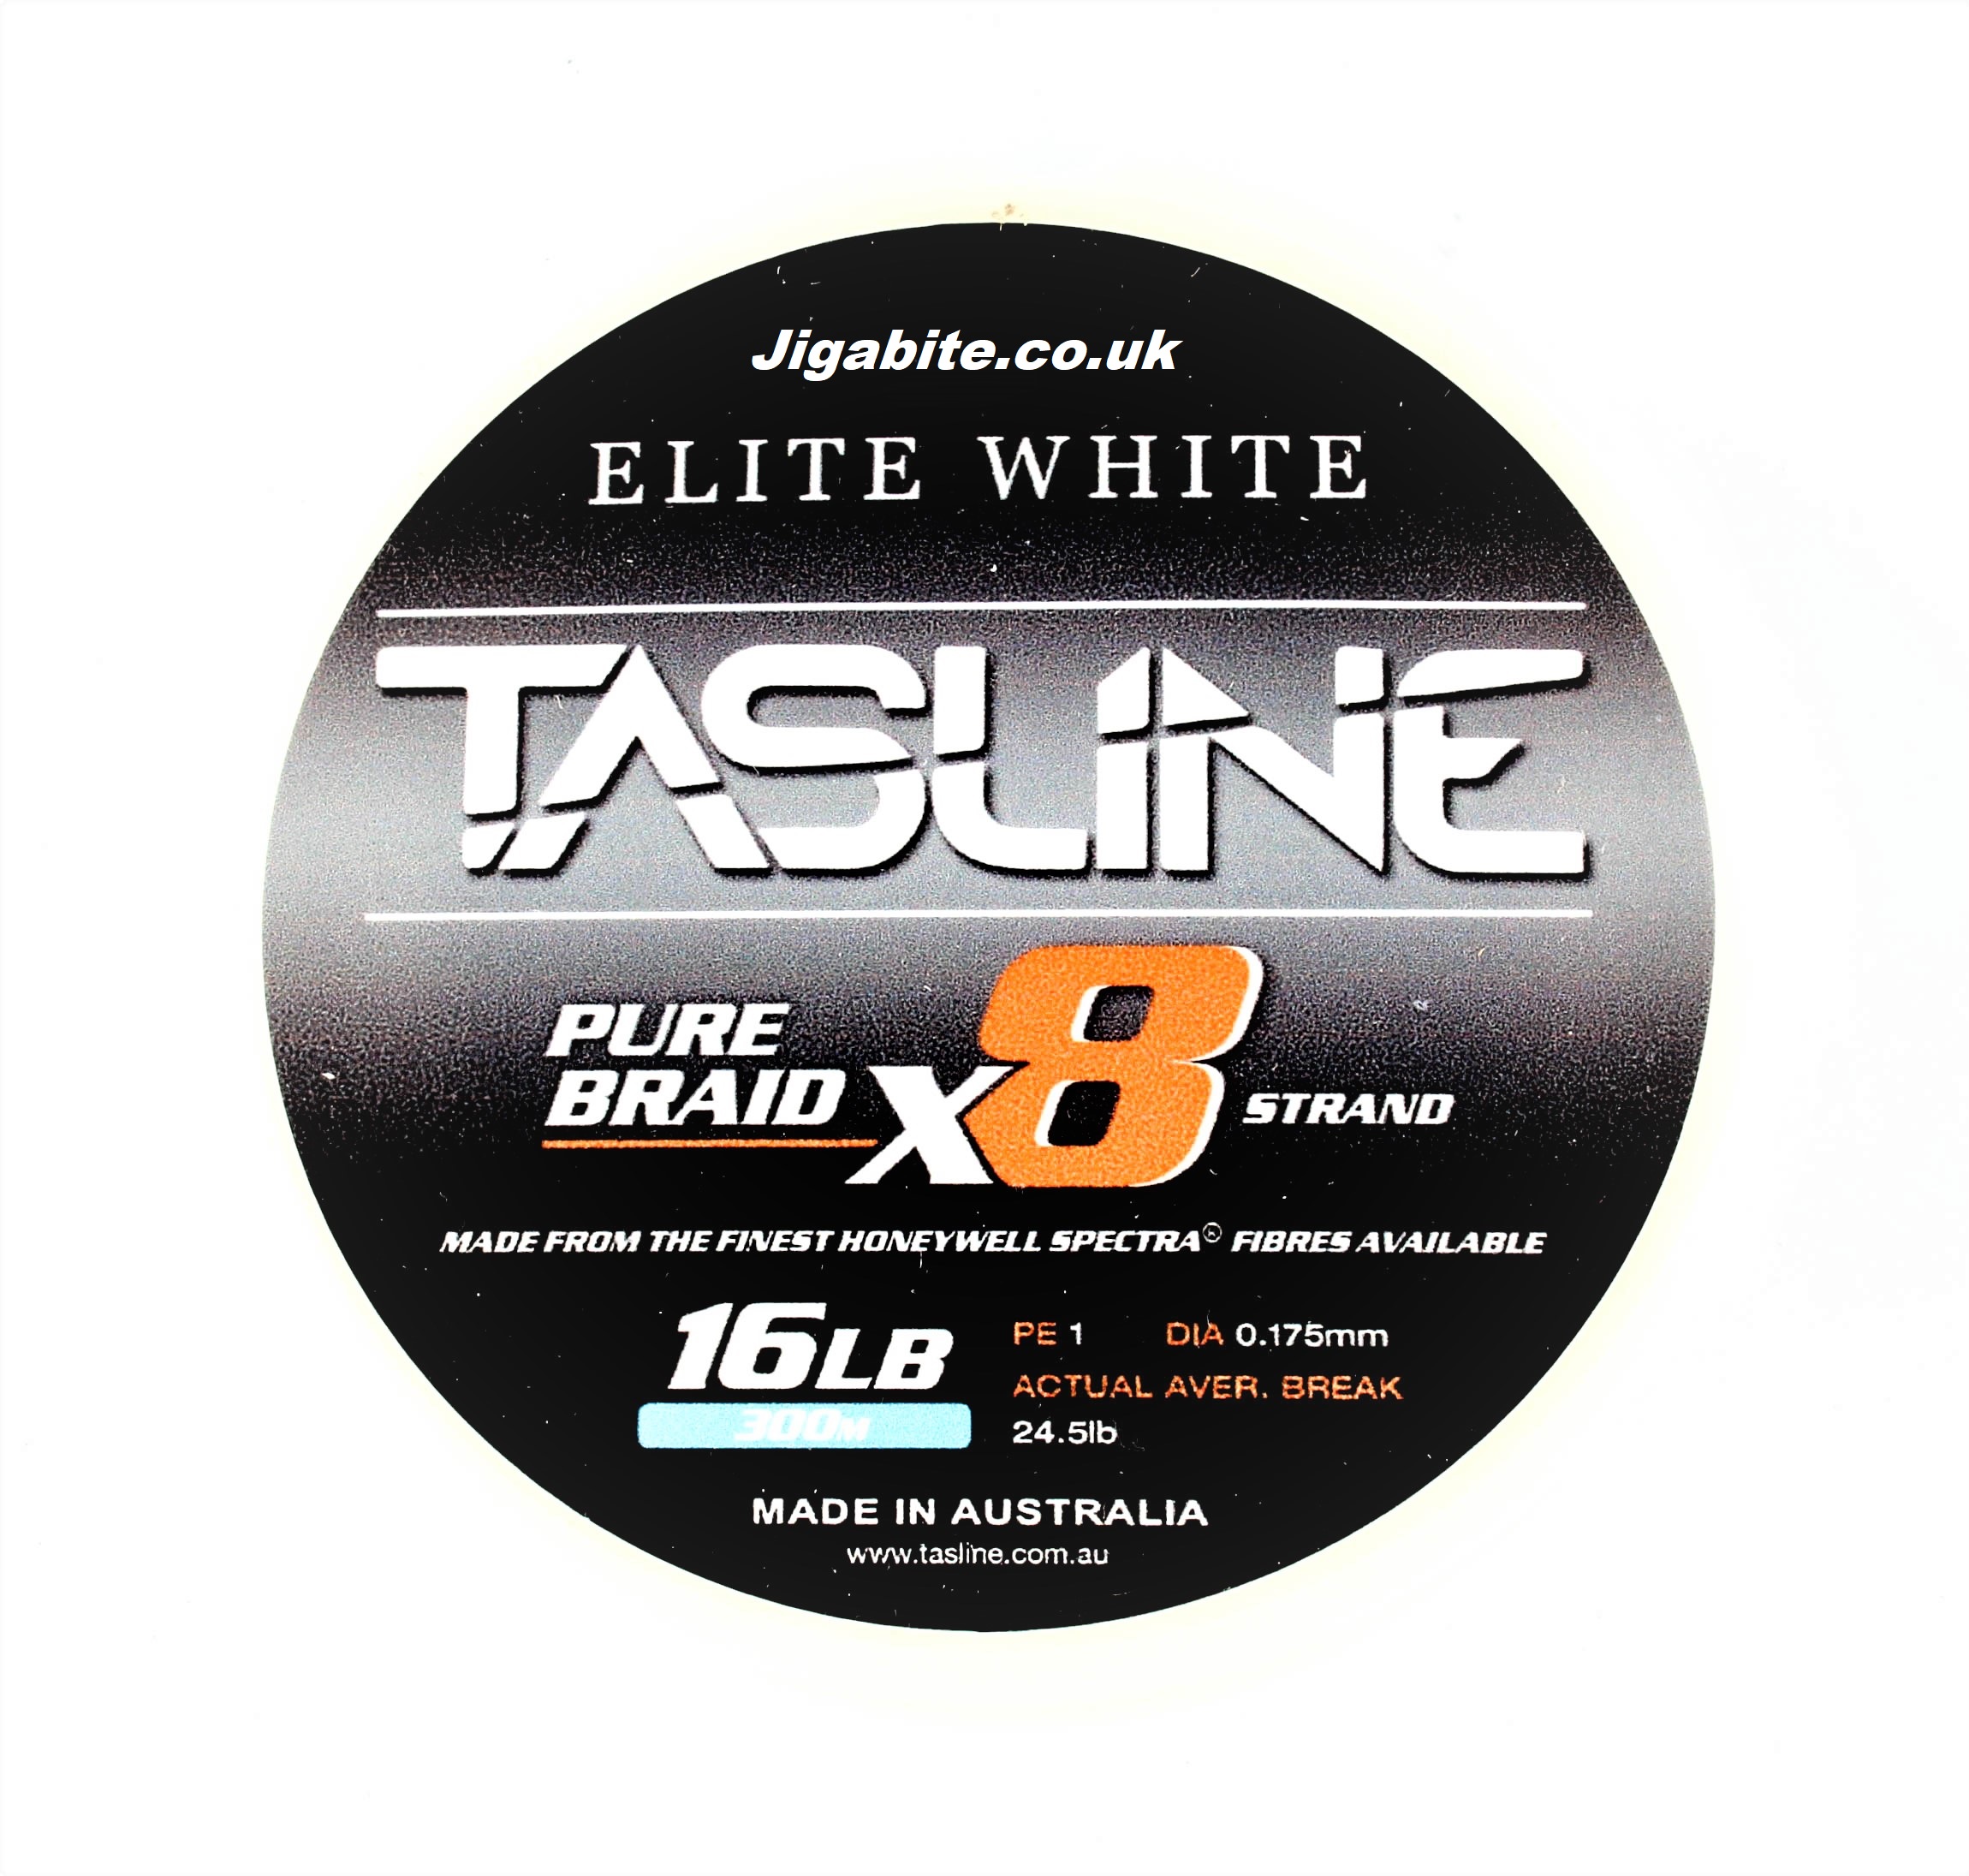 Fishing Line Testing - Tasline Elite x8 8lb Braid 